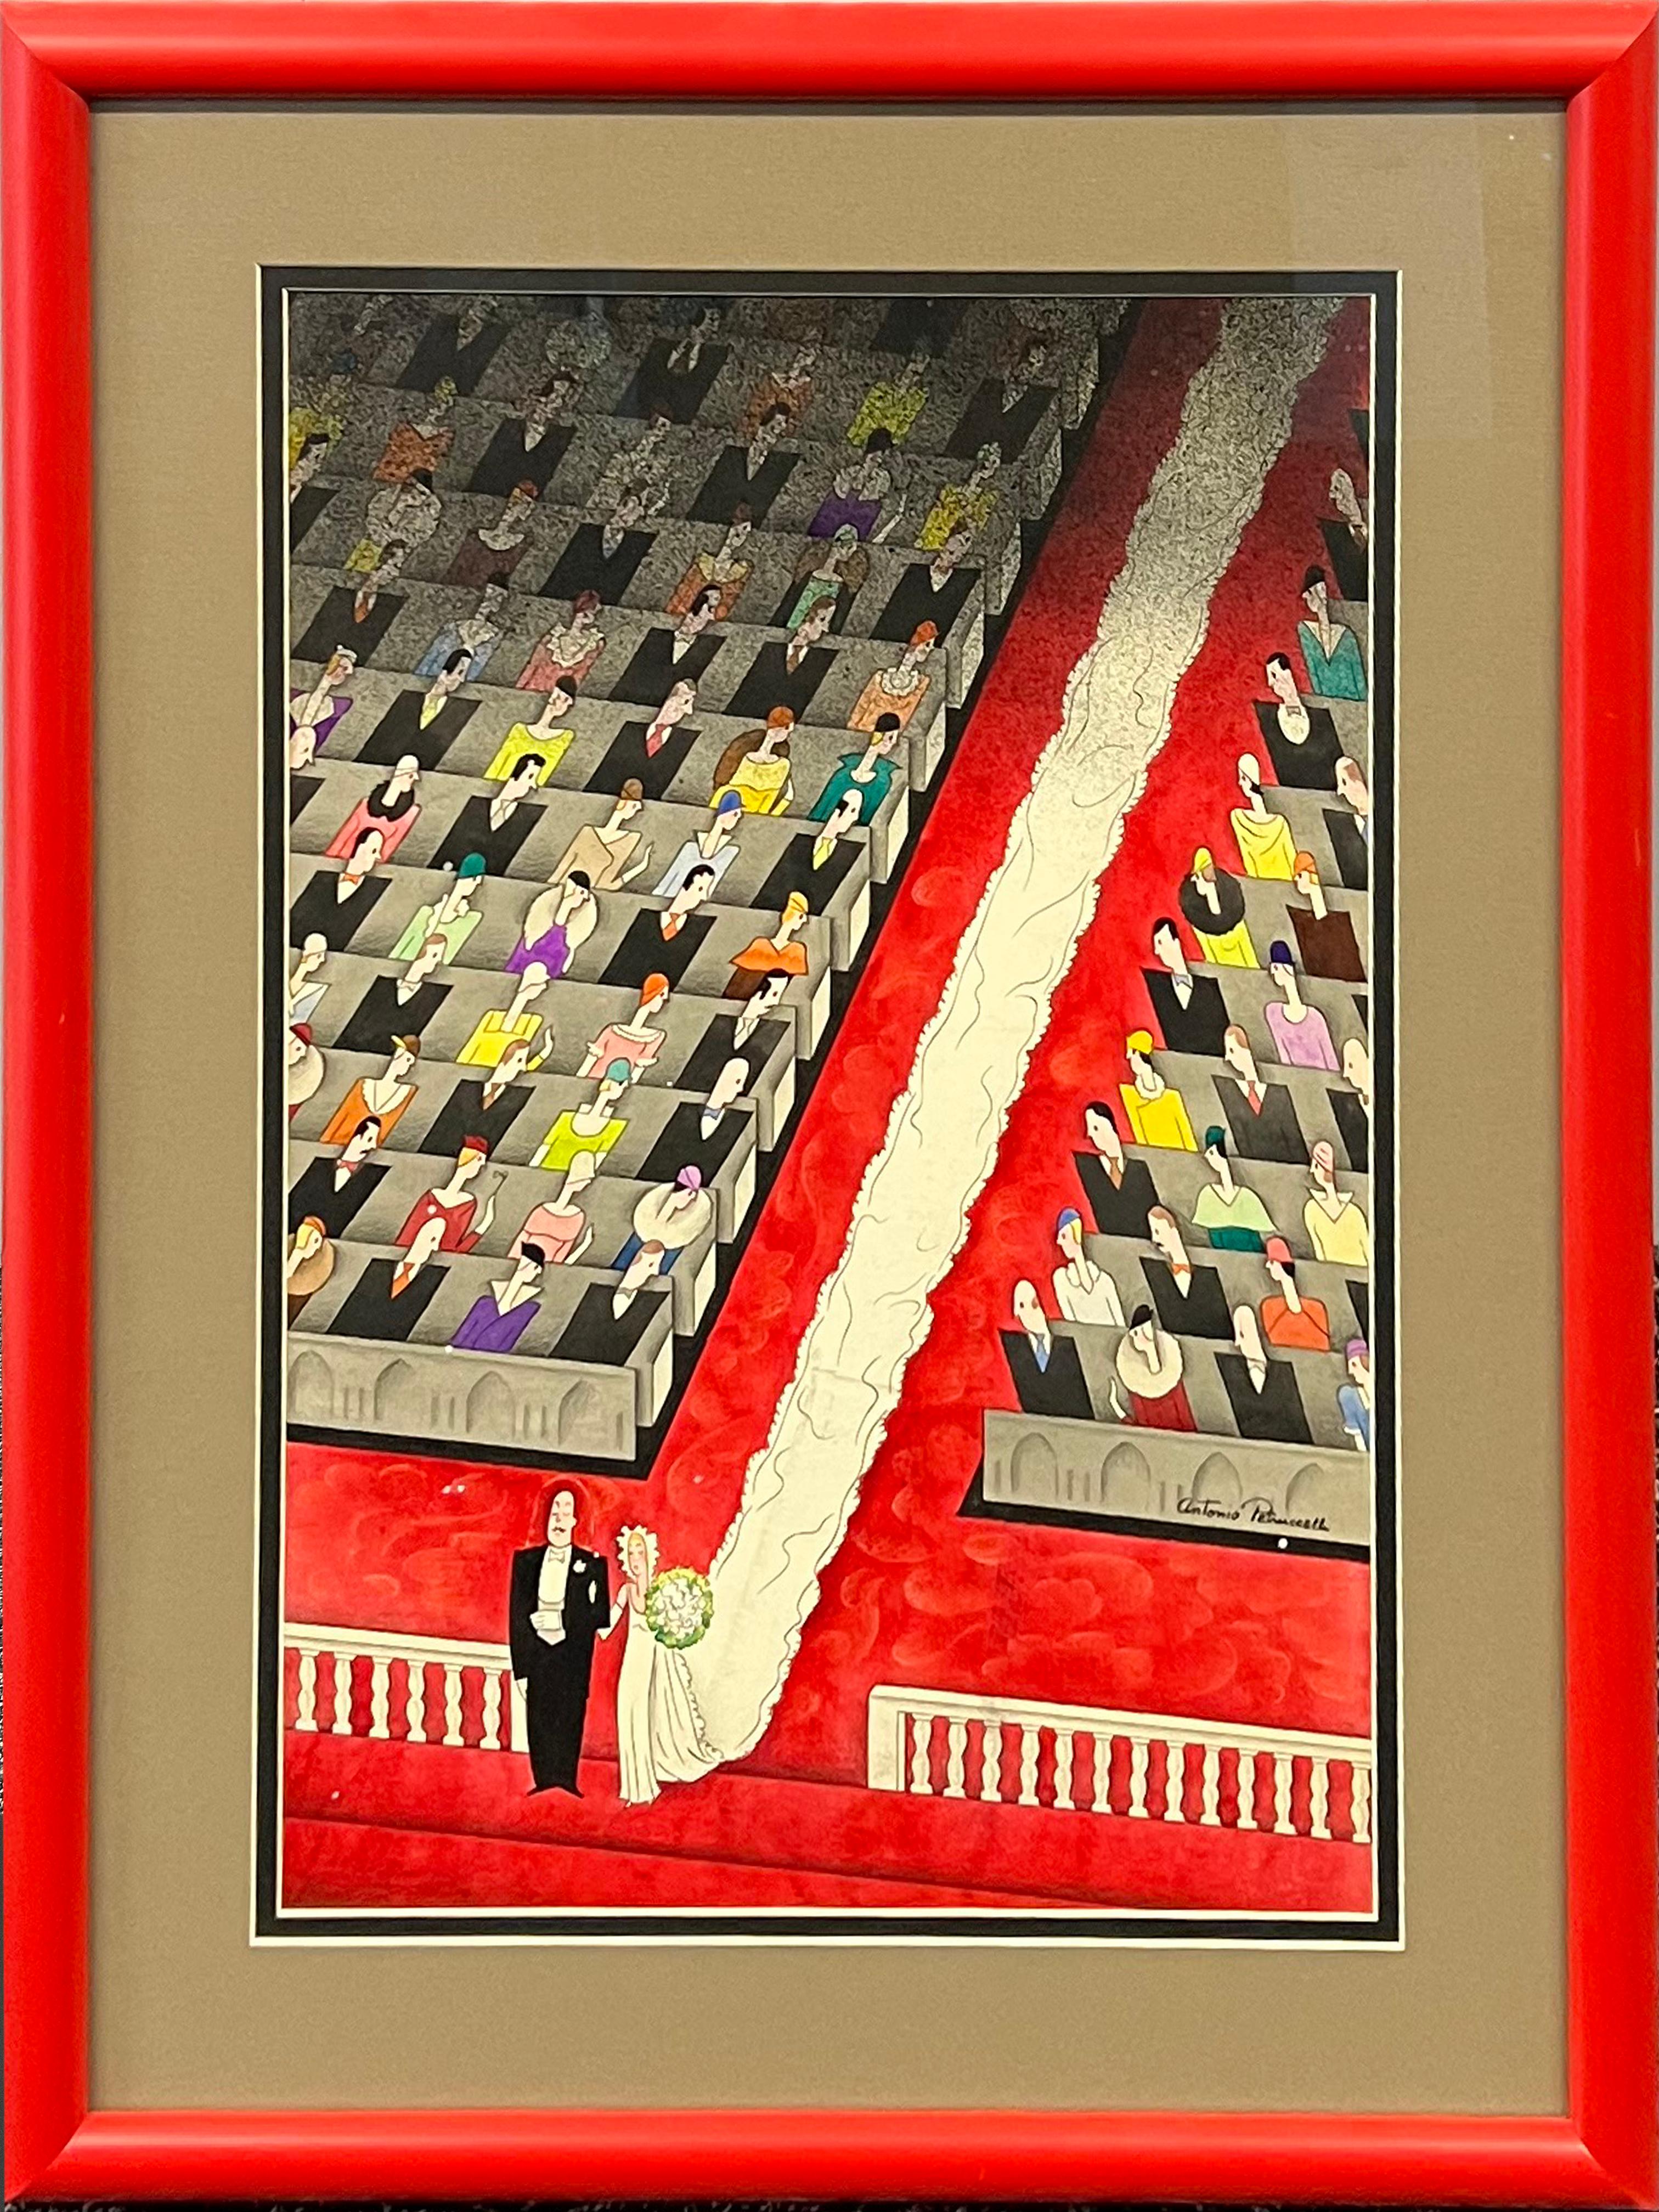 Original-Gemälde. Colliers Magazine Cover, veröffentlicht 1933, Hochzeitsillustration 

Antonio Petruccelli (1907 - 1994)
Die Hochzeit
Colliers veröffentlicht, Juni 17, 1933
17 1/4 x 11 1/2 Zoll (Sicht)
Gerahmt 23 1/4 X 17 1/2 Zoll
Gouache auf